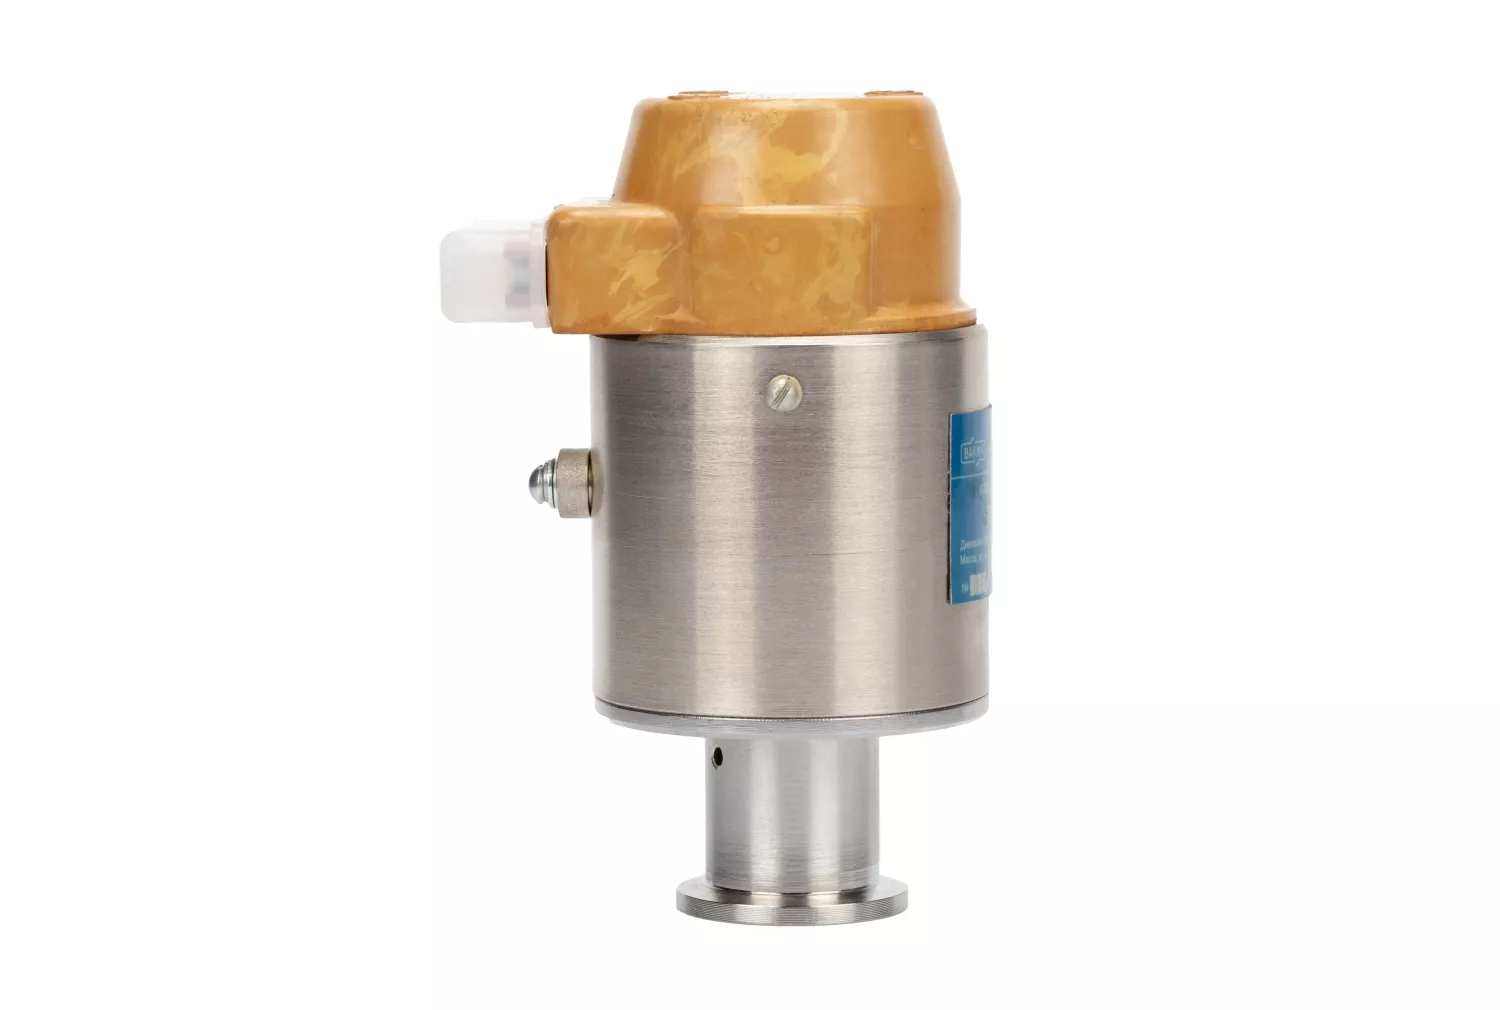 Напускной вакуумный клапан 3КН-2,5 (нормально-открытый) от производителя АО Вакууммаш